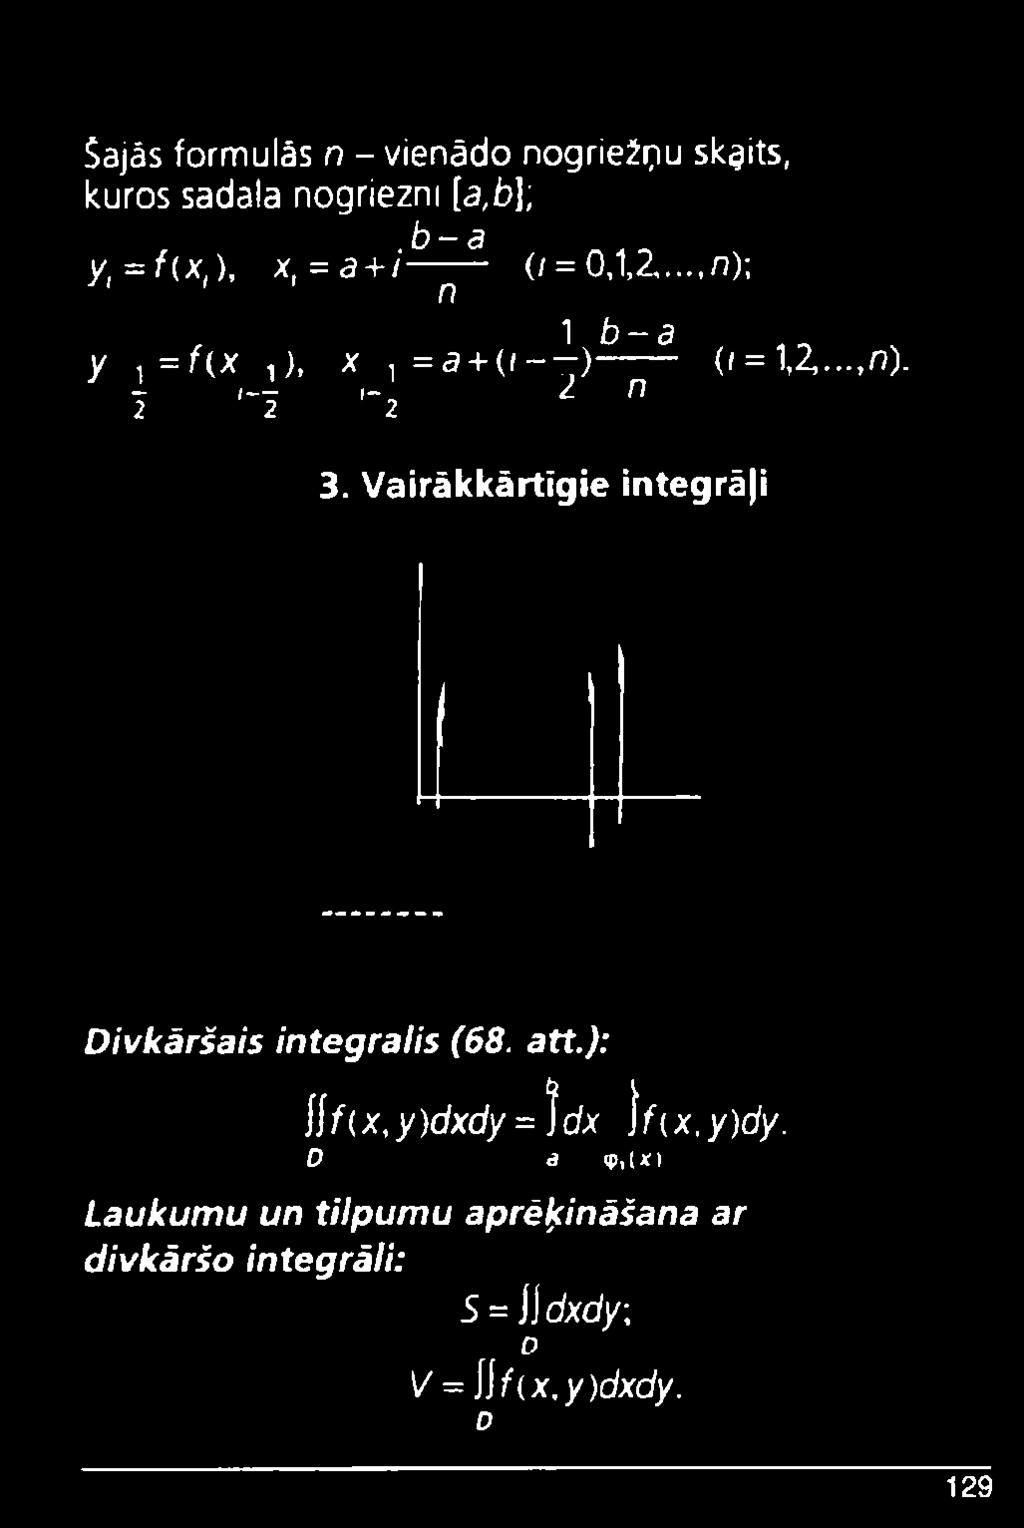 Vairākkārtīgie integrāji Divkāršais integrālis (68. att.): \\f(x,y)dxdy = )dx \f(x,y)dy.